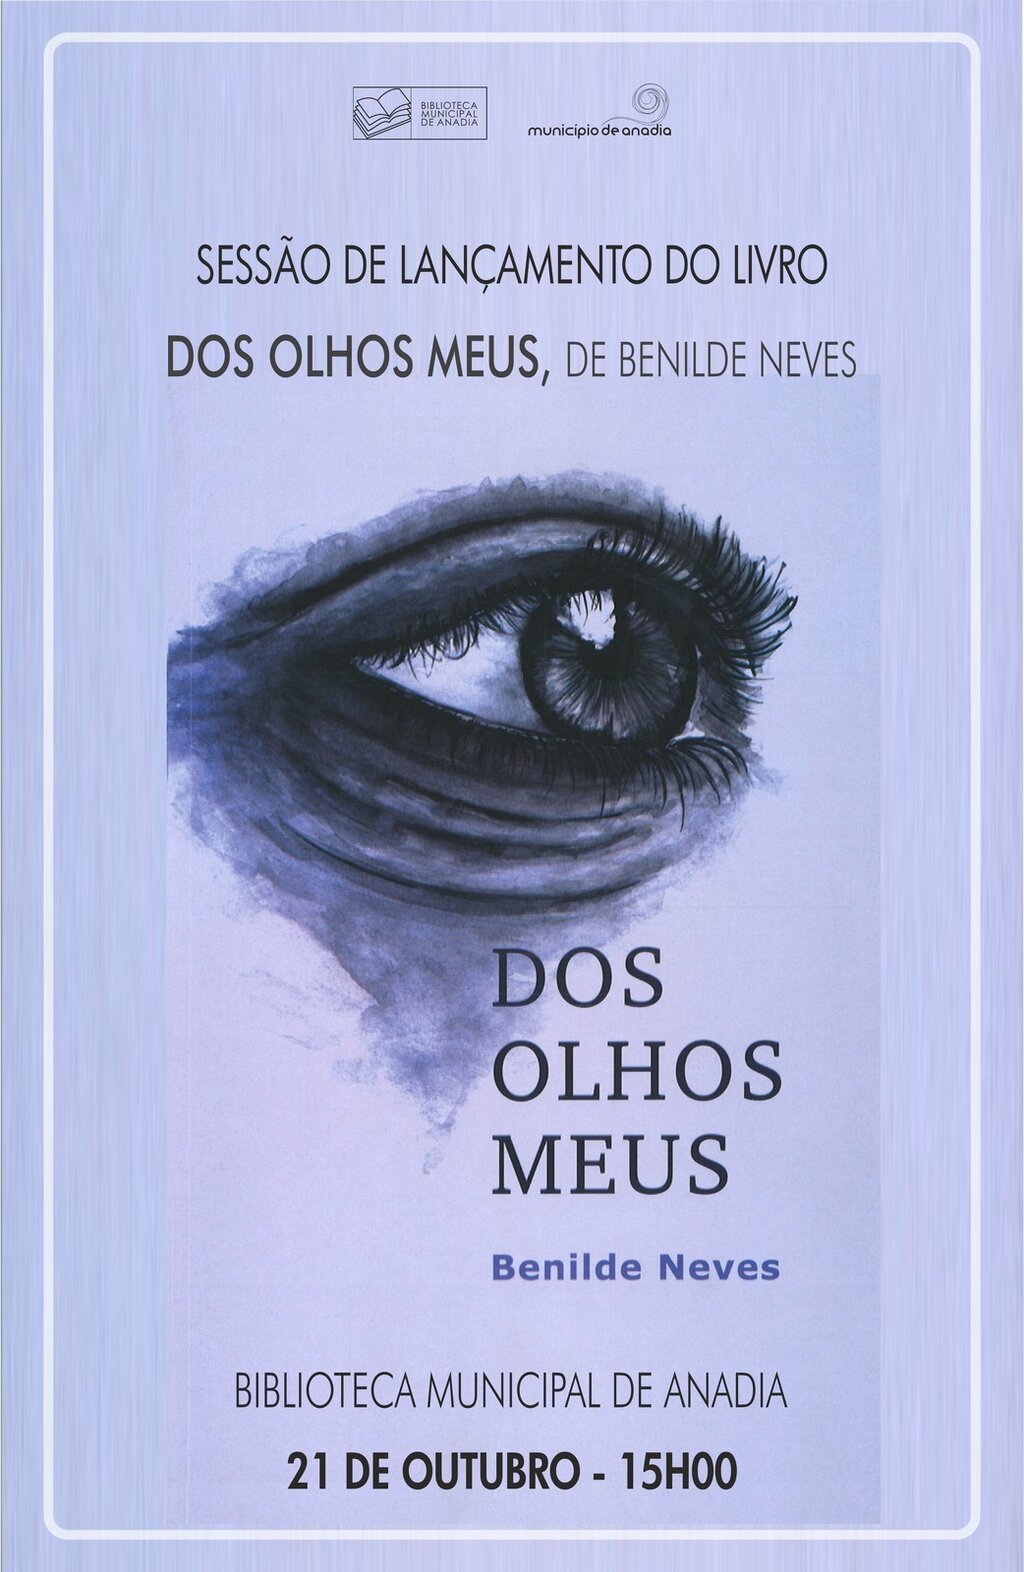 Sessão de lançamento do livro "Dos Olhos Meus"